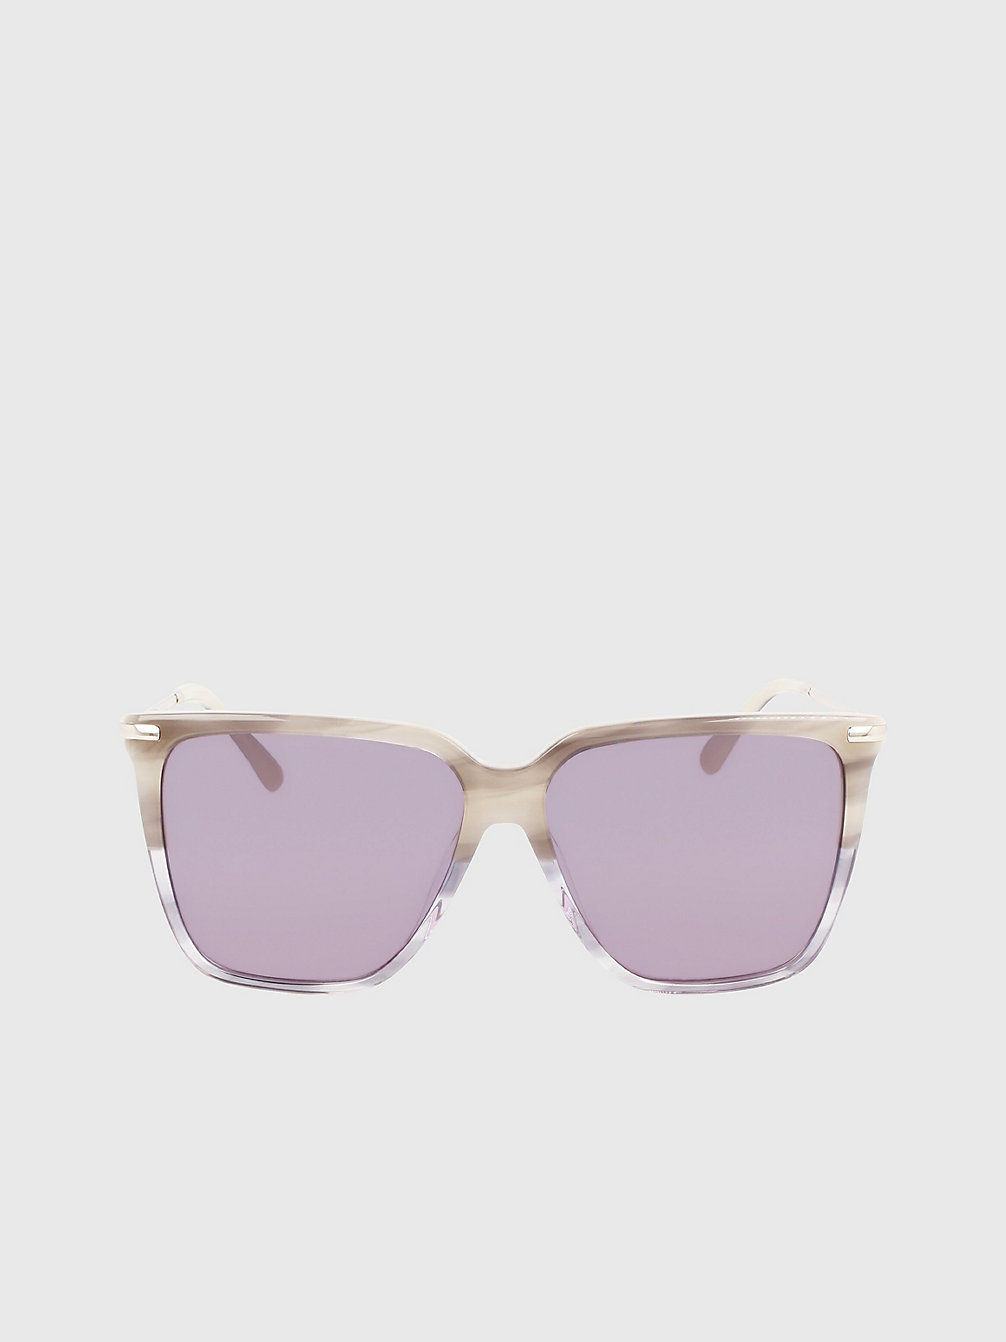 STRIPED GREY > Прямоугольные солнцезащитные очки Ck22531s > undefined Женщины - Calvin Klein